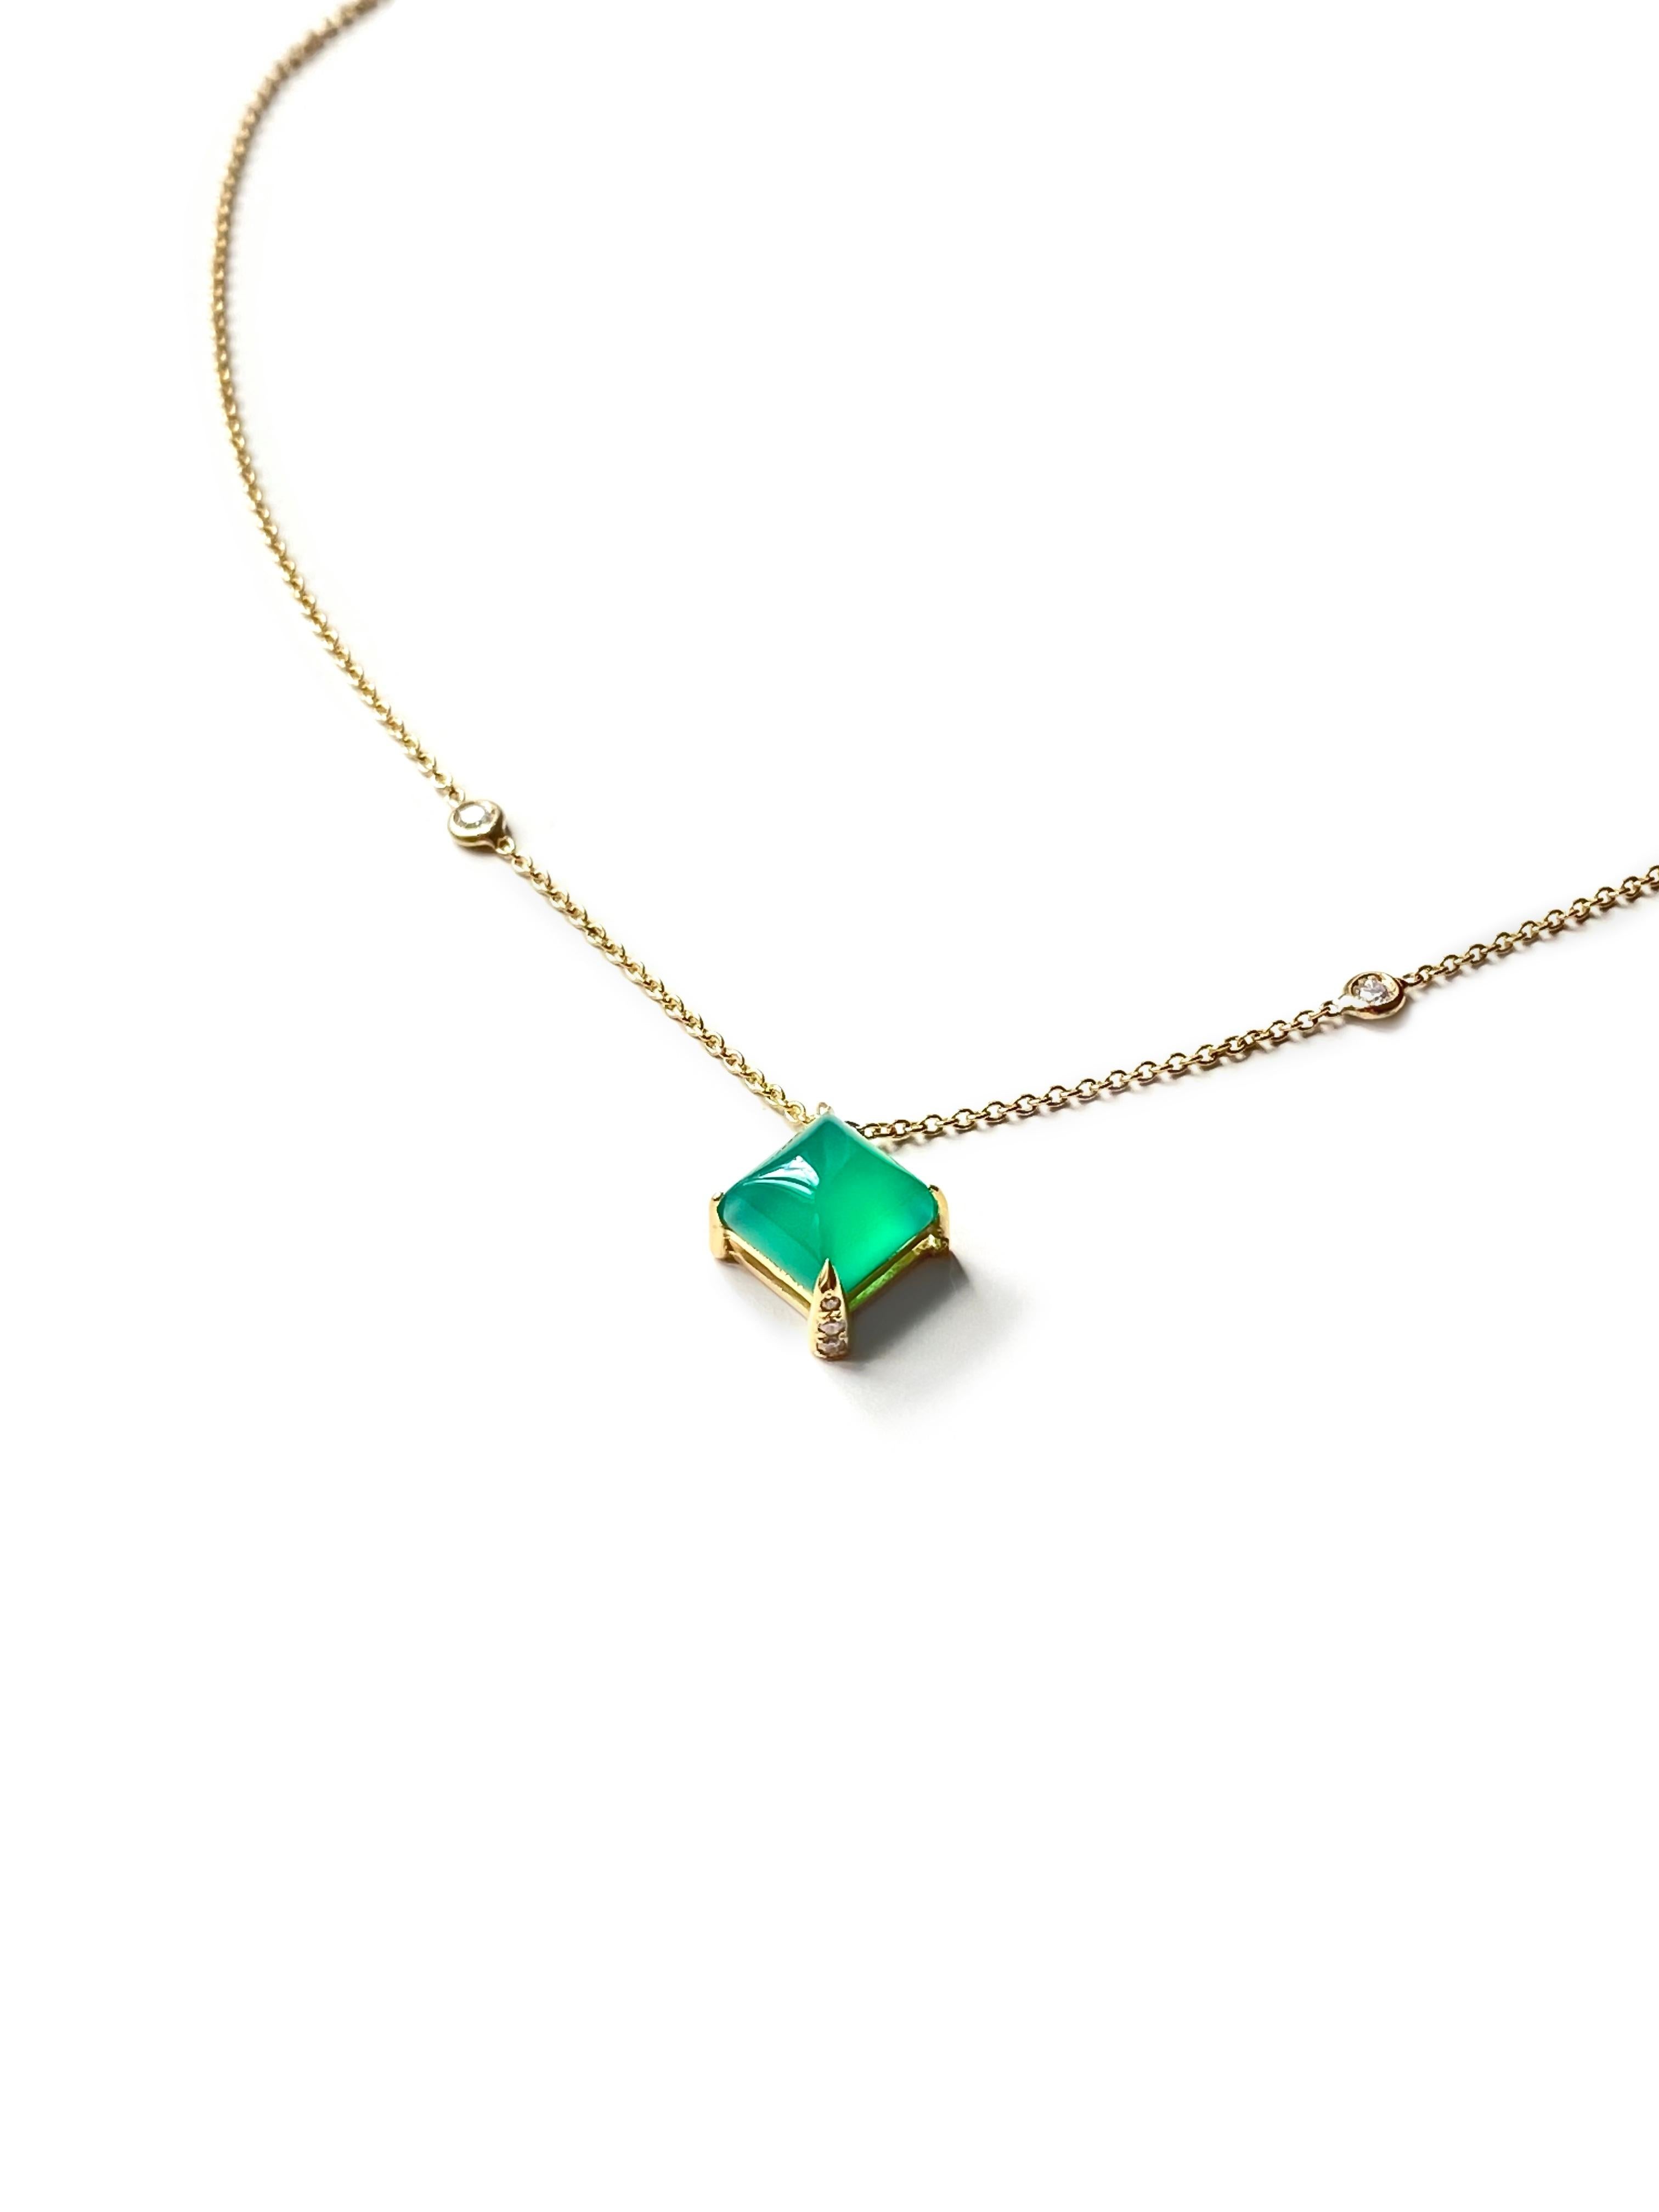 Rossella Ugolini Design Collection Art Deco Stil 18 Karat Gelbgold 0,045 weiße Diamanten Grüner Achat Design Kette Halskette Anhänger.
Zwei weiße Diamanten befinden sich auf der Kette. In der Mitte befindet sich eine Zuckerhutpyramide aus leuchtend